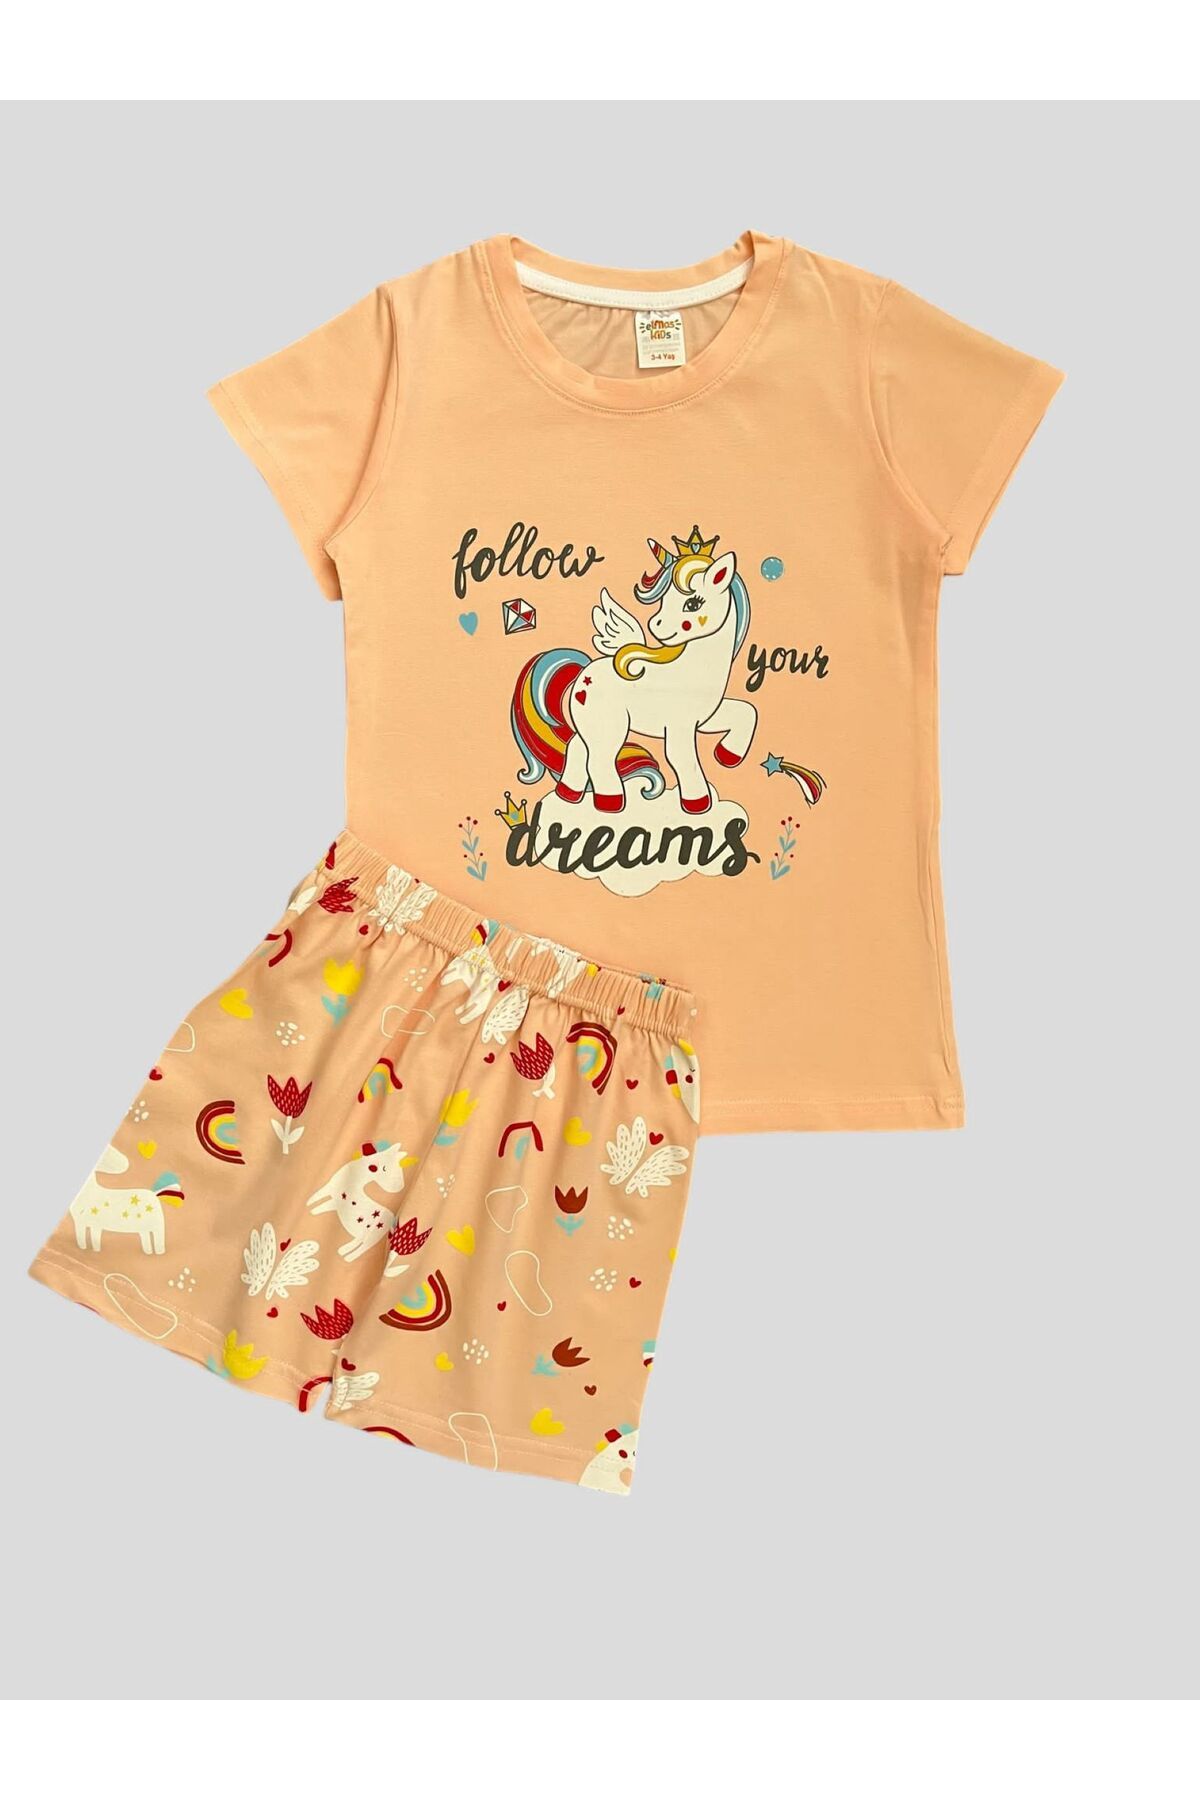 elmas kids Kız Çocuk %100 Pamuklu Unıcorn Desenli Kısa Kollu Şortlu Yazlık Pijama Takımı